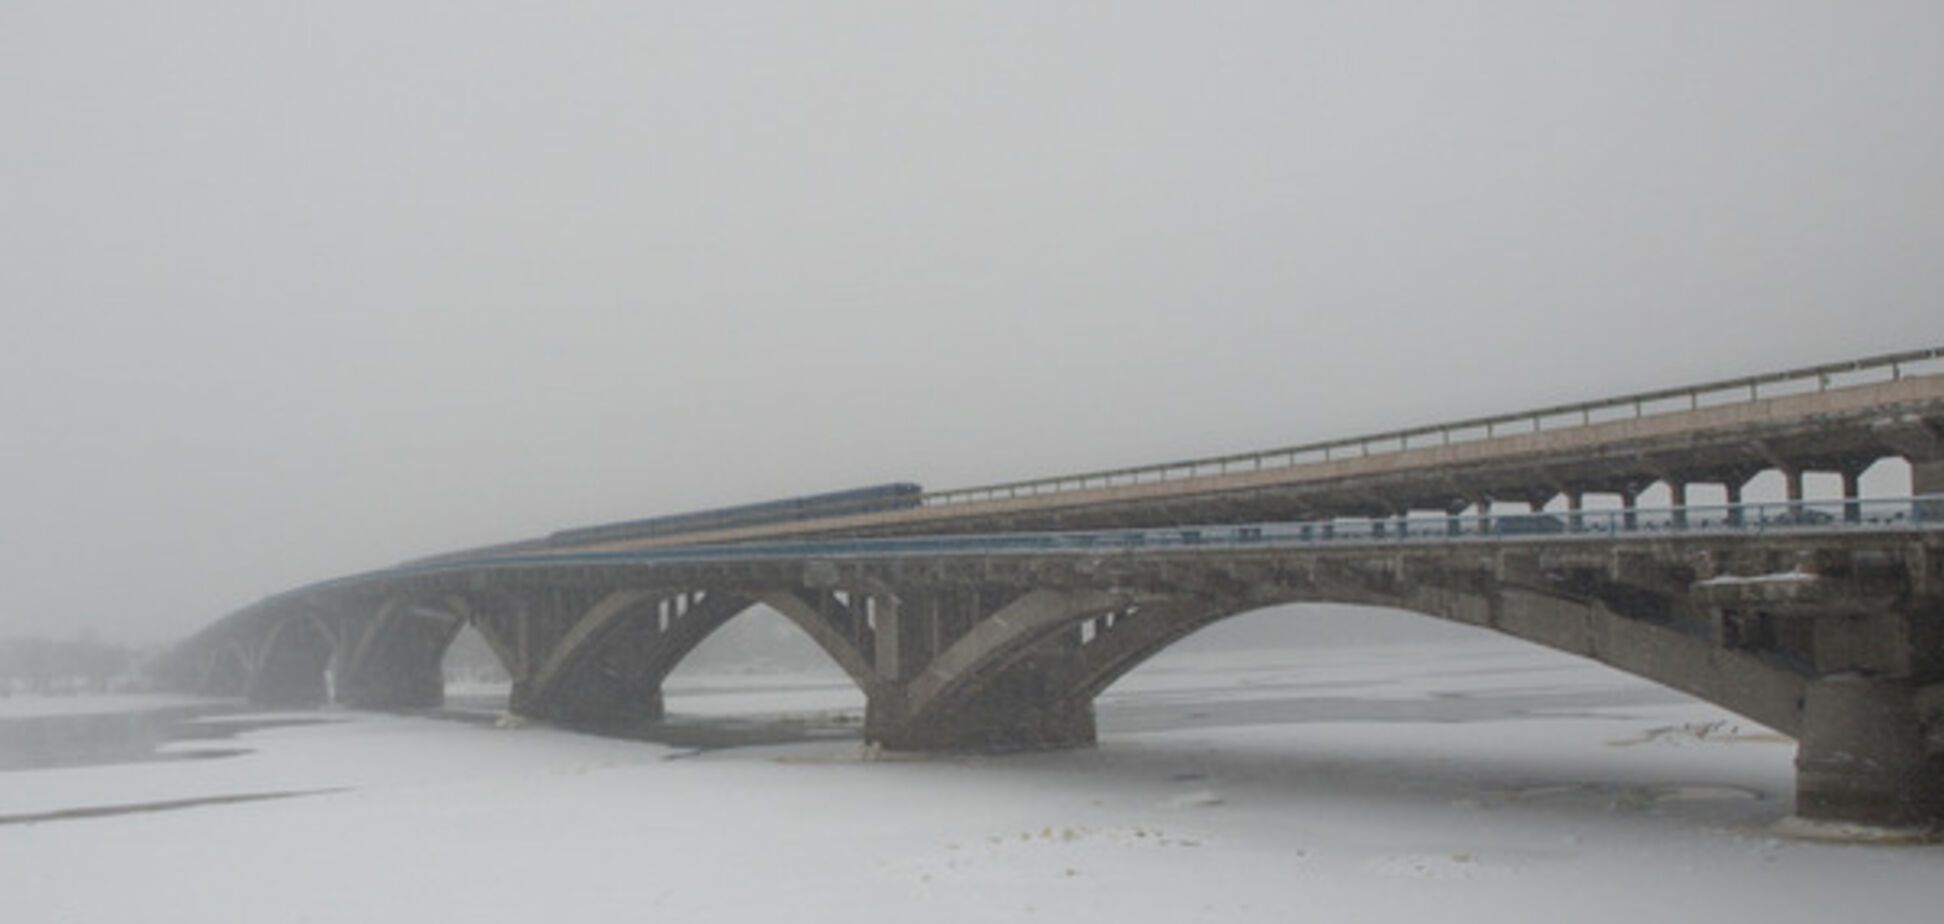 Мост Метро